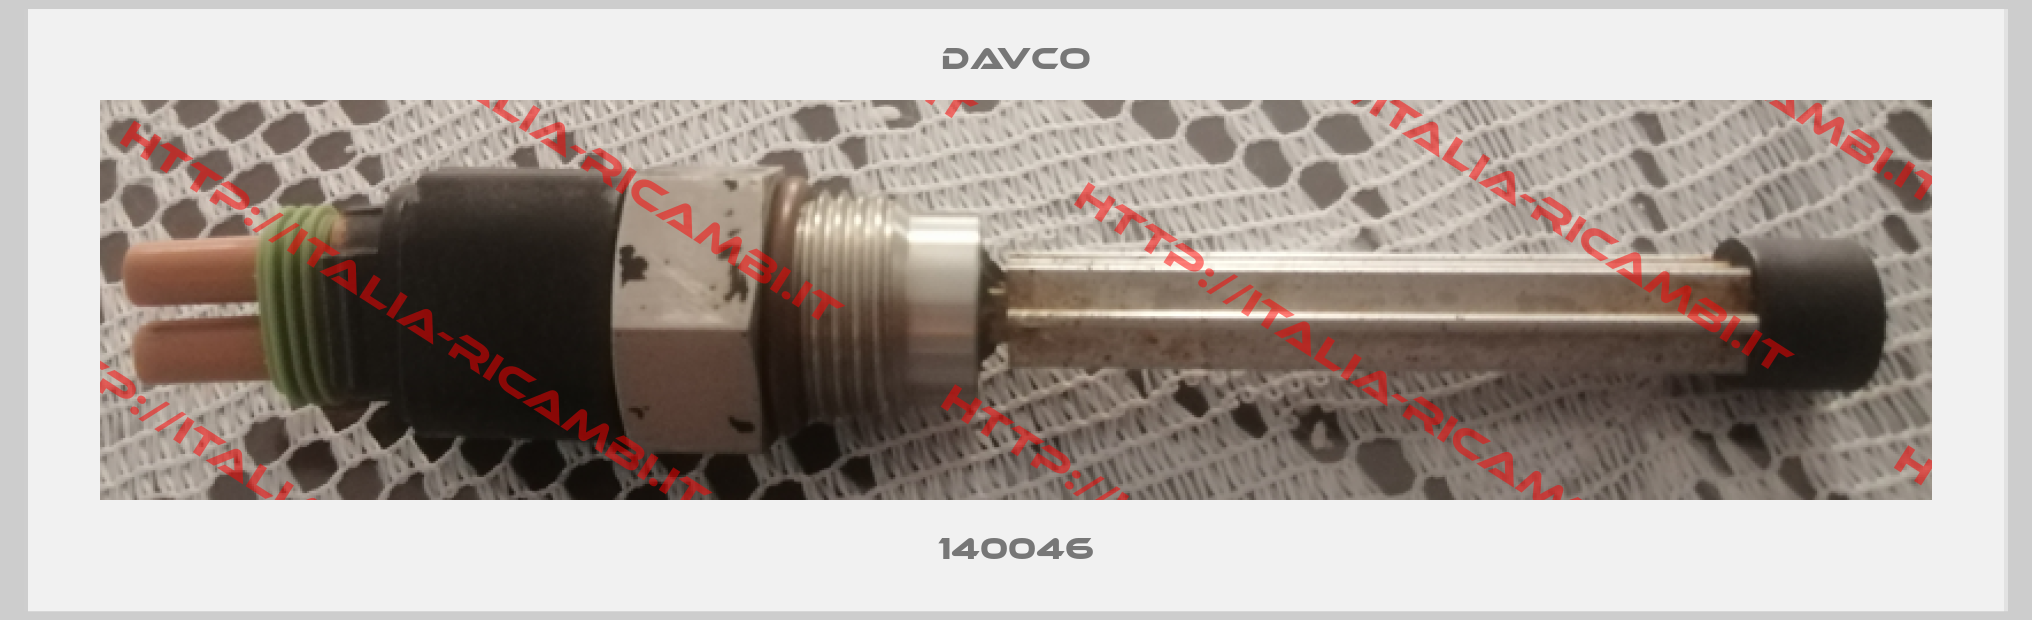 DAVCO-140046